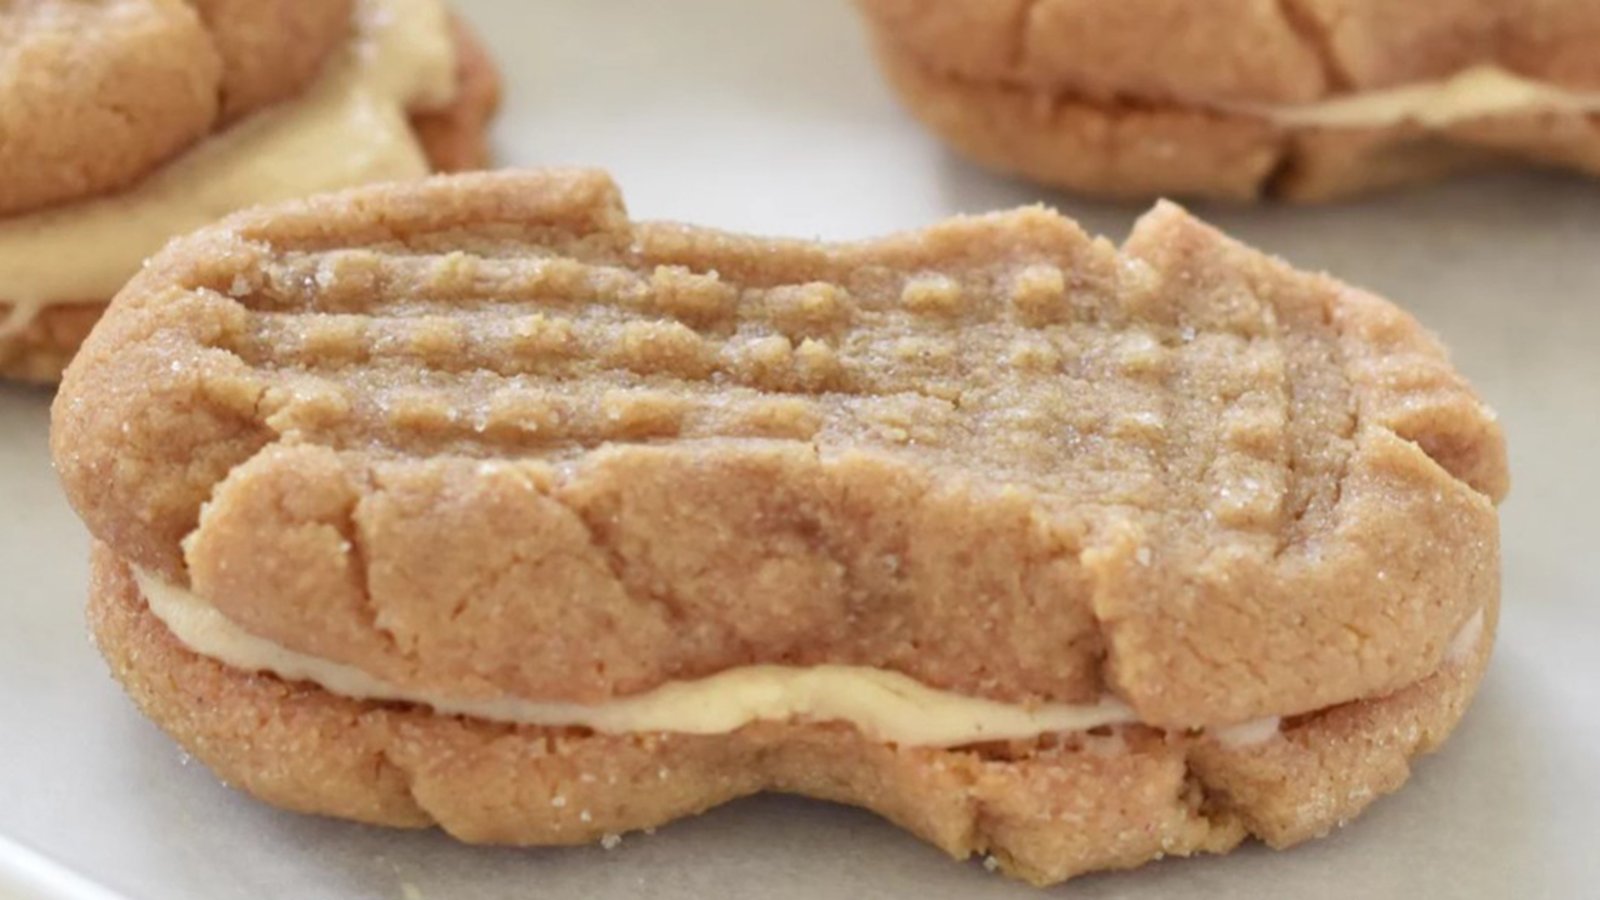 Une bonne vieille recette de nos grands-mères... Le classique biscuit au beurre d'arachide en forme de peanut!